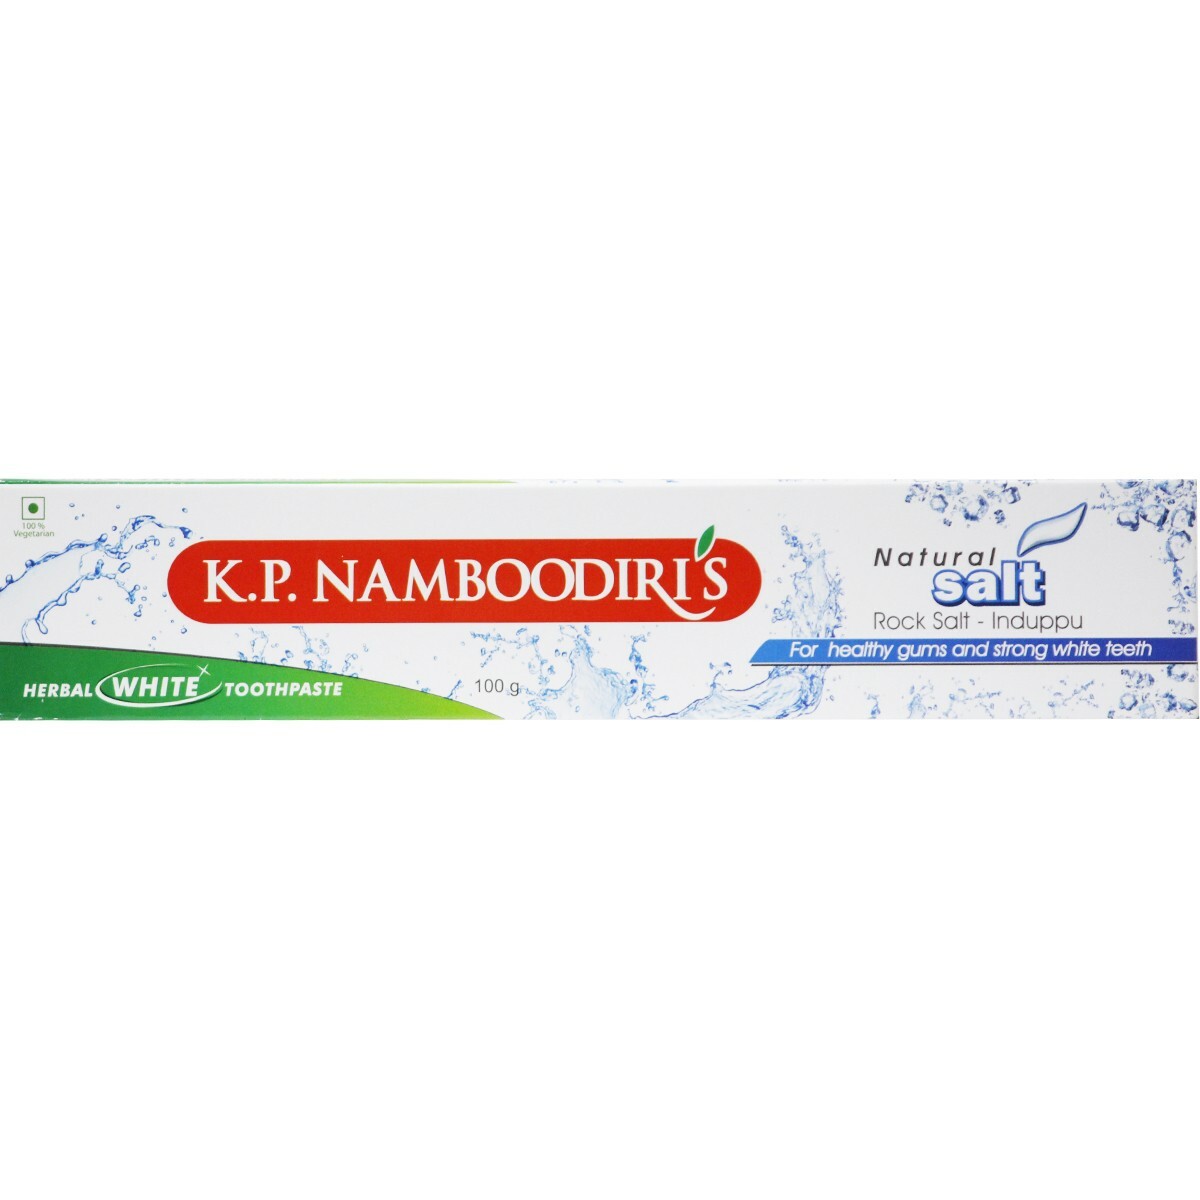 KP Namboodiris Tooth Paste White Salt 100g